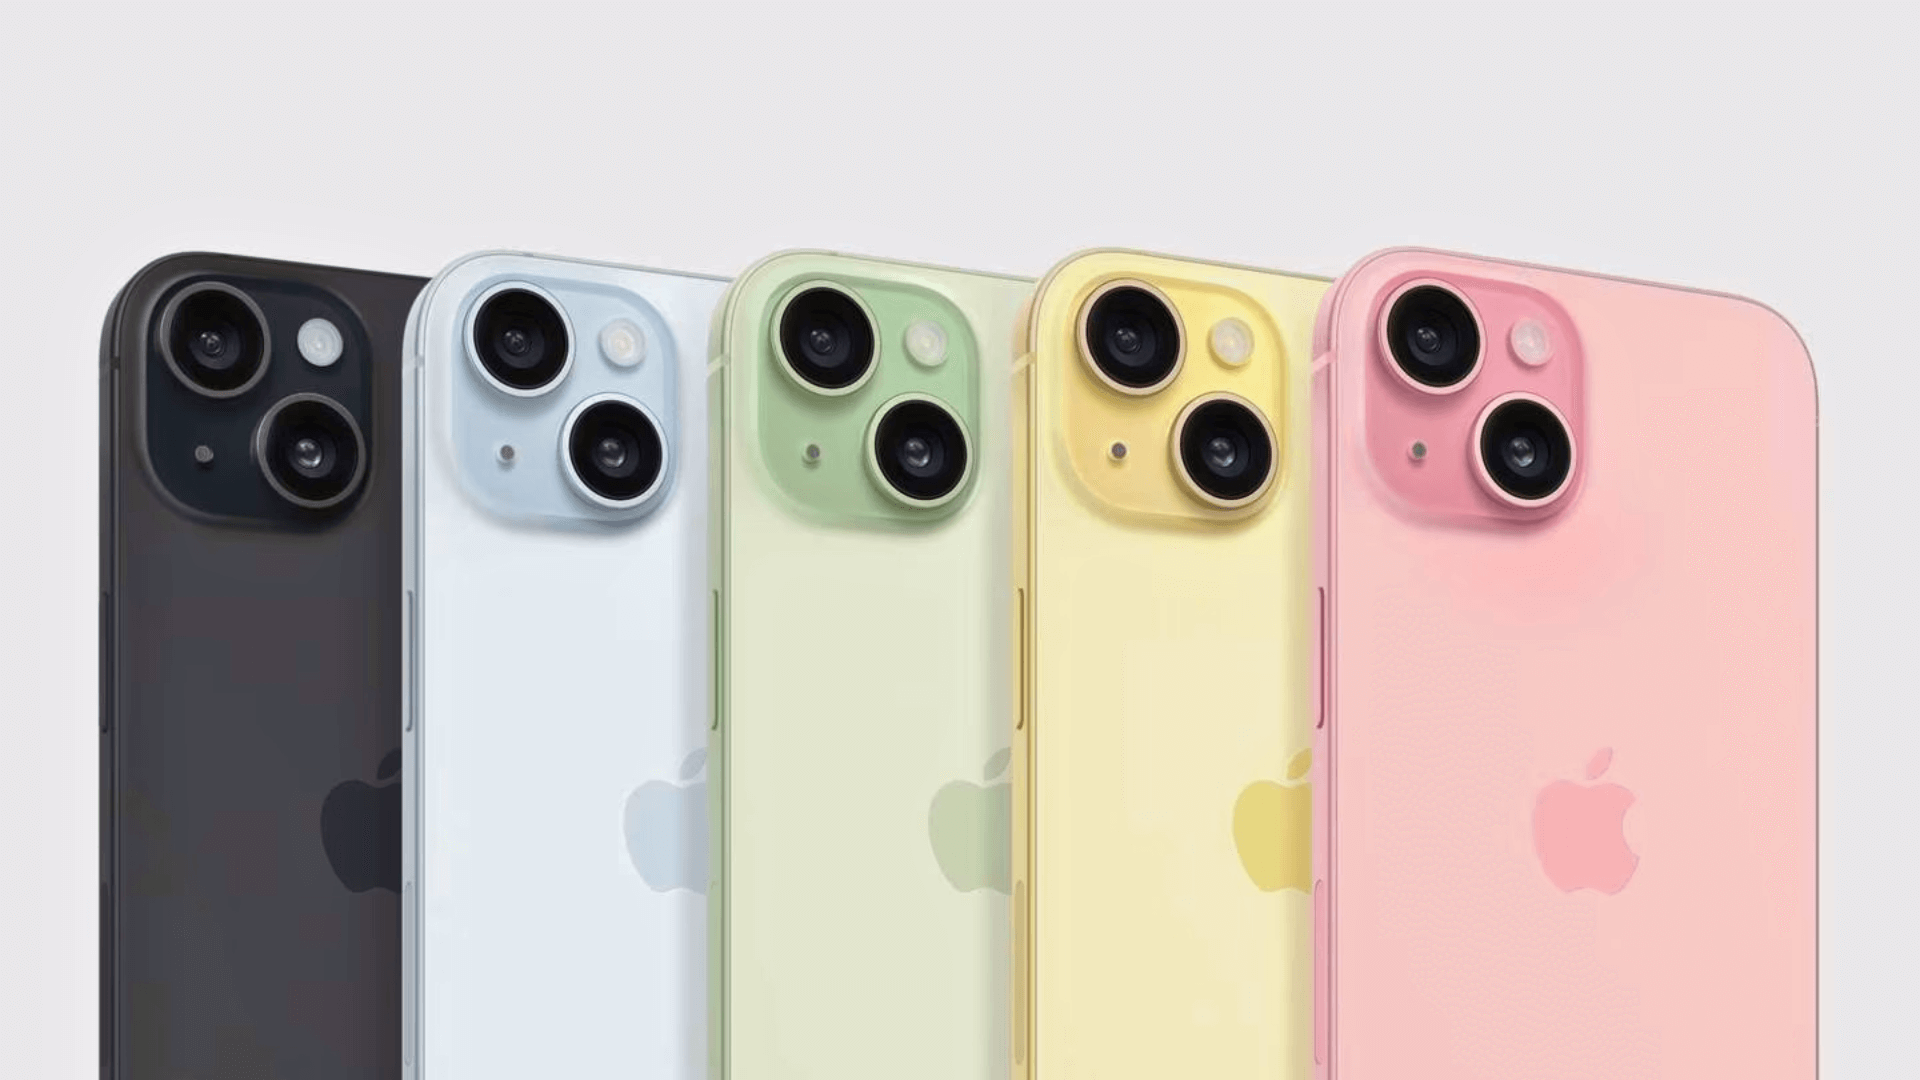 Carregamento UBS-C e câmera de 48 MP: confira as novidades do iPhone 15